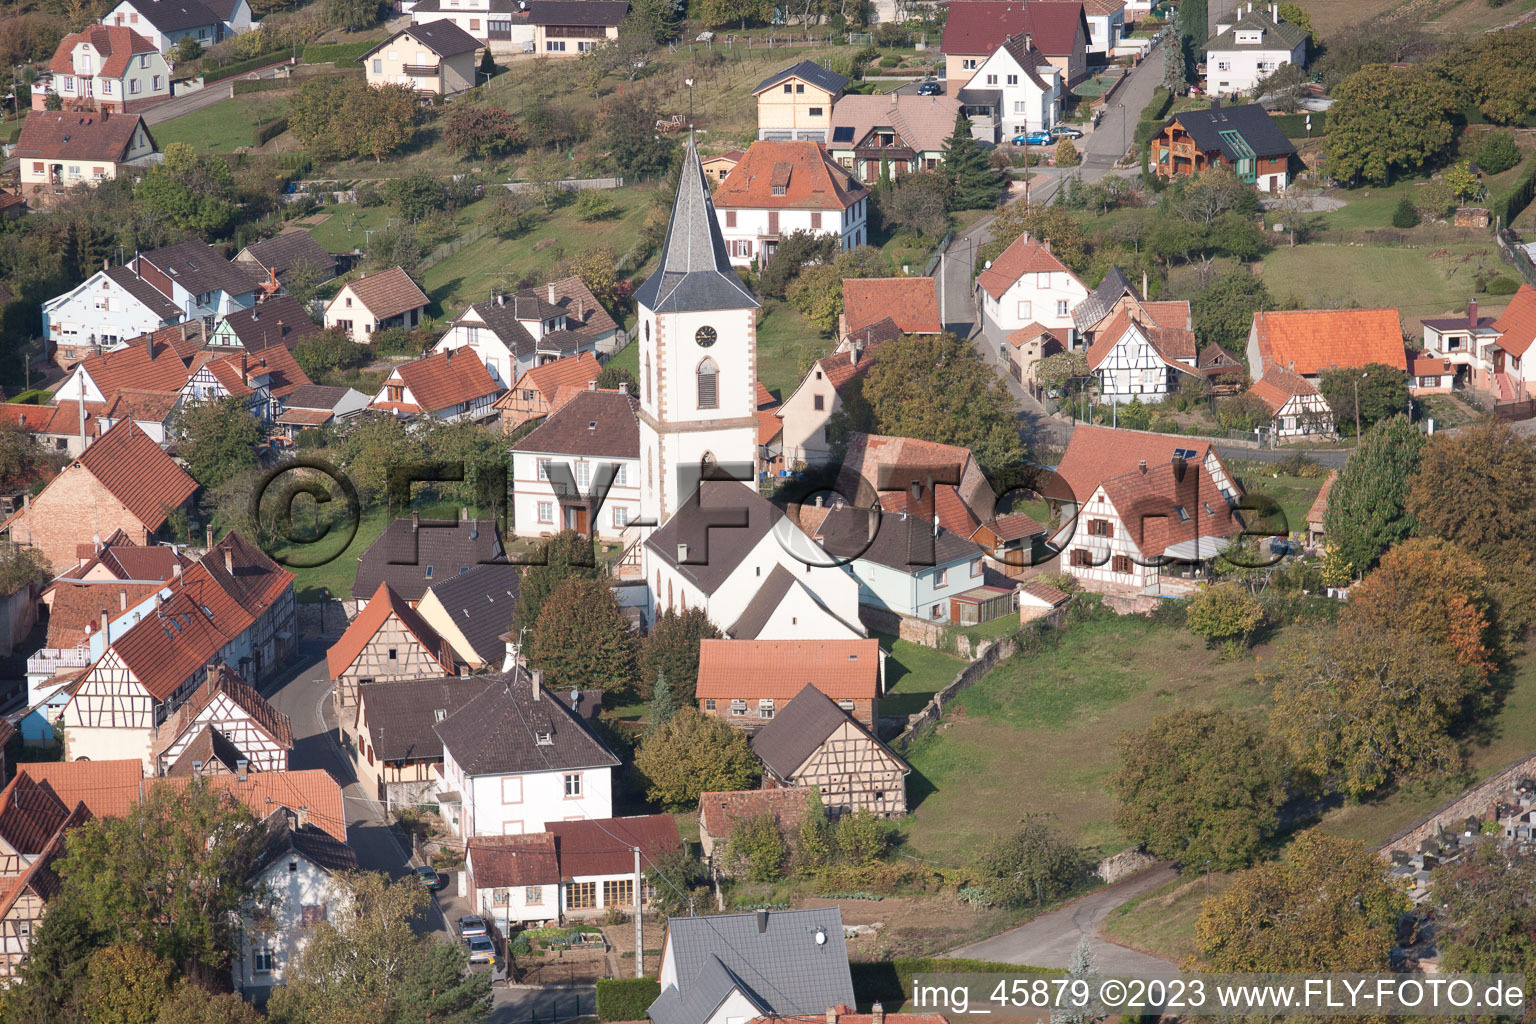 Mitschdorf im Bundesland Bas-Rhin, Frankreich von der Drohne aus gesehen